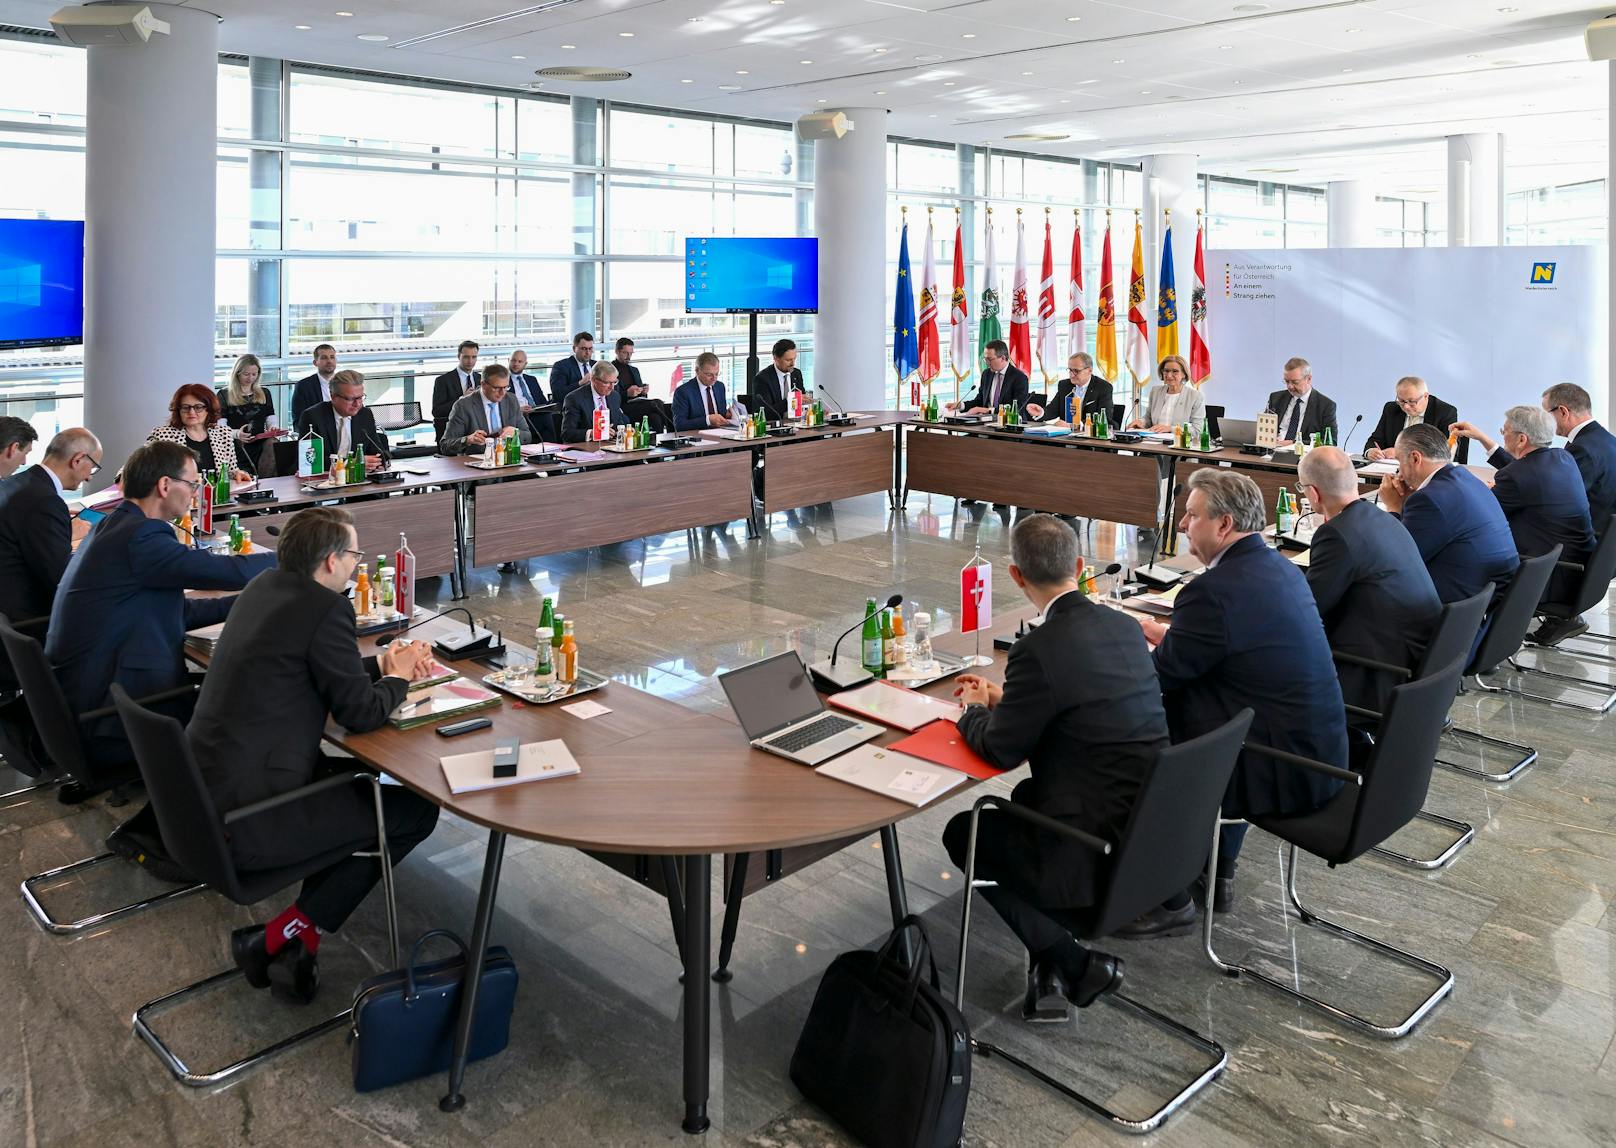 Bilder der Landeshauptleutekonferenz in St. Pölten